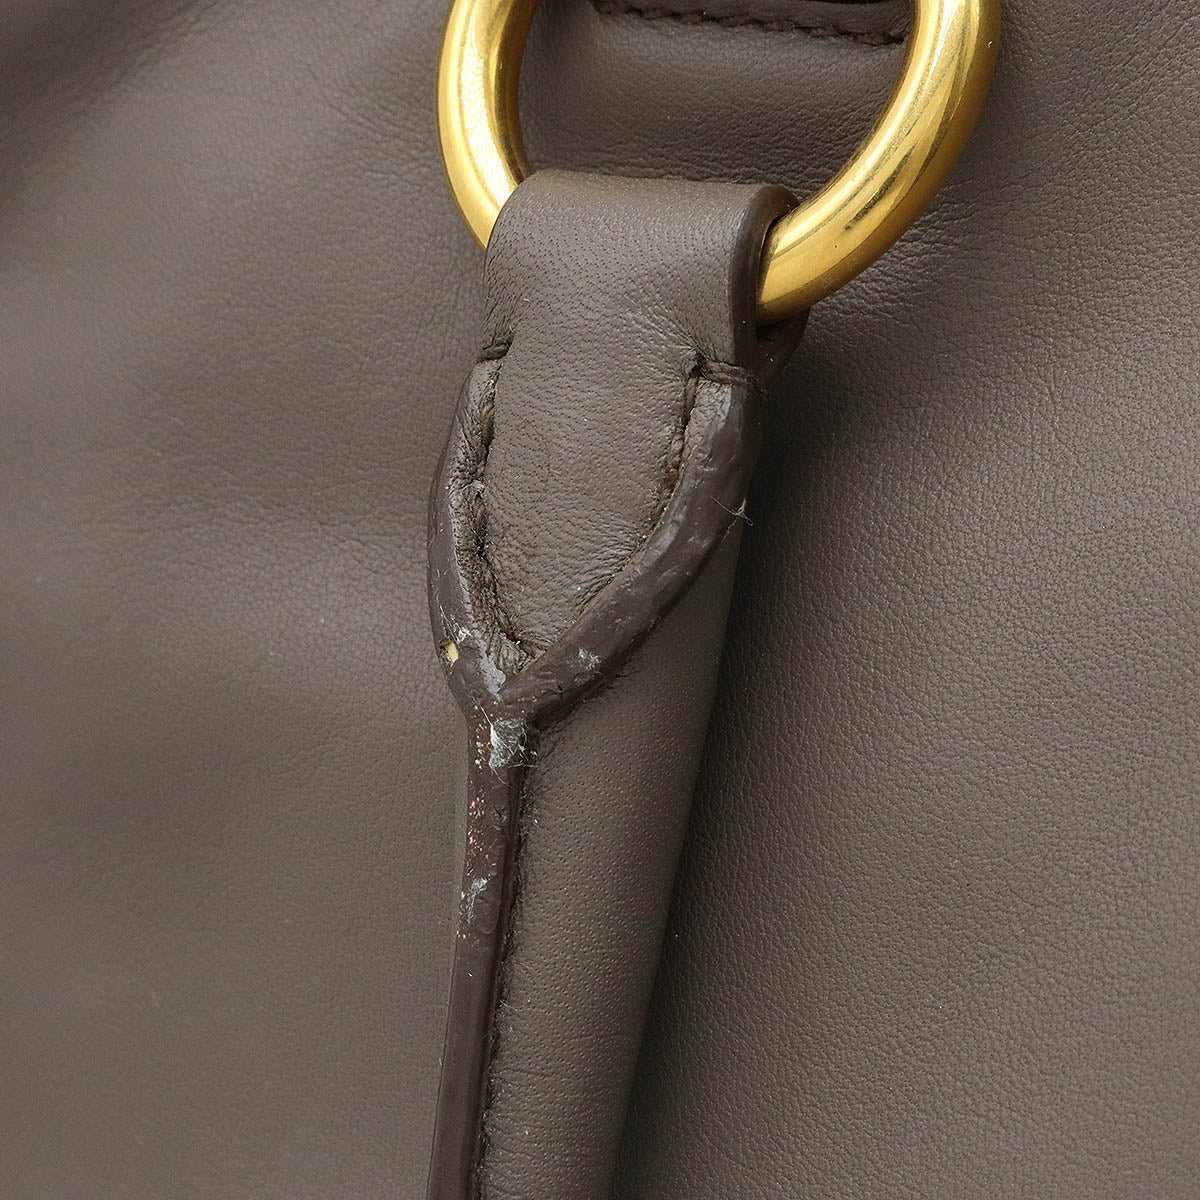 PRADA Soft Calf Leather Handbag Shoulder Bag Grey BN2103